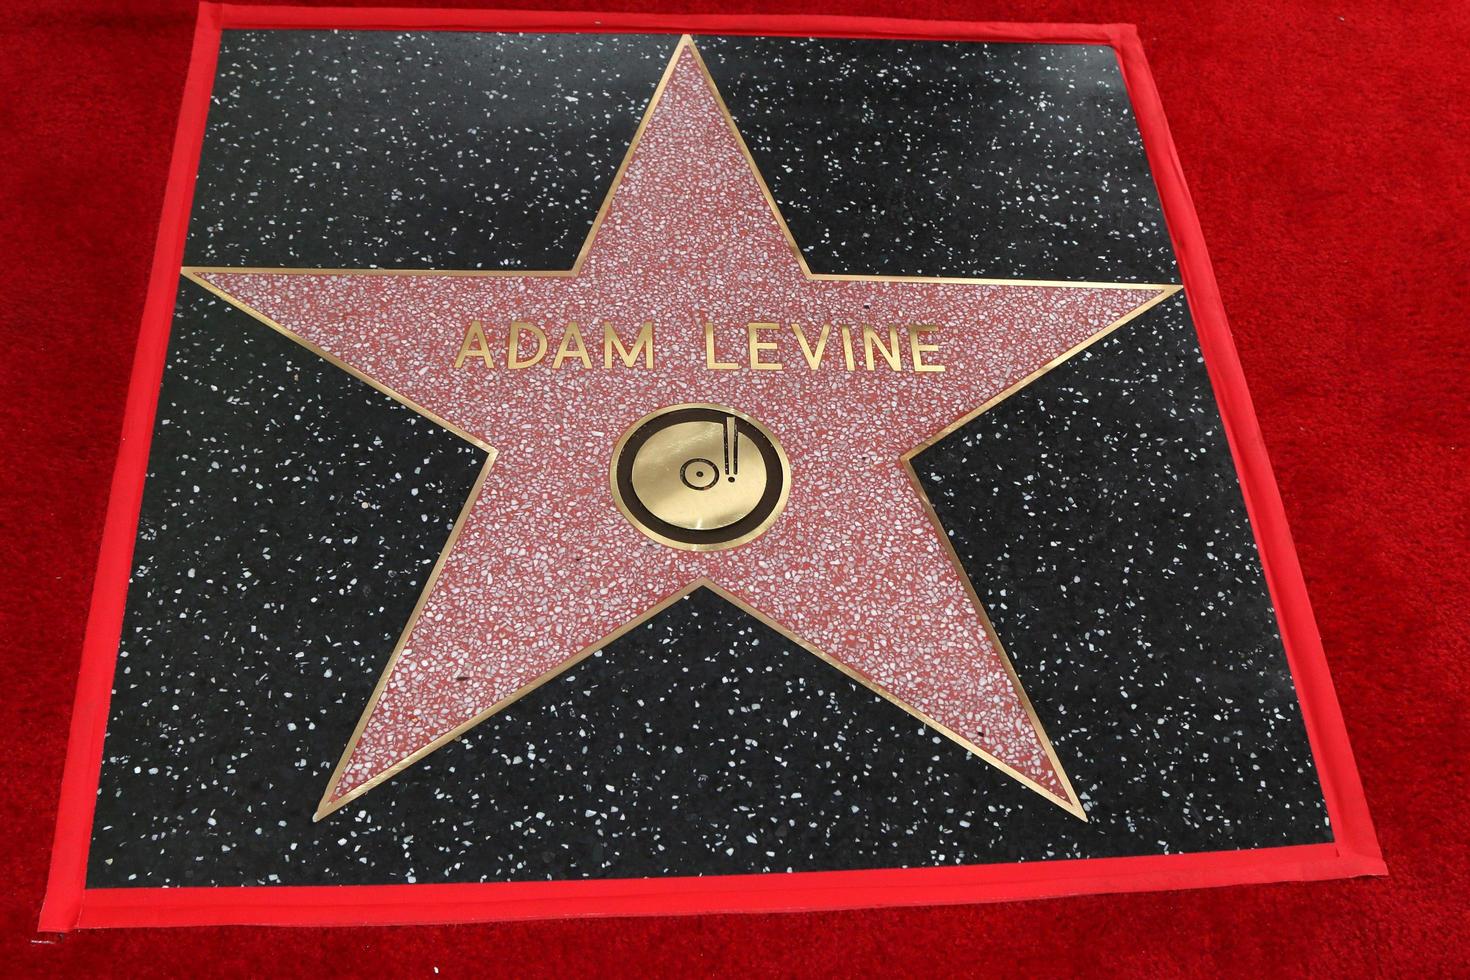 los angeles 10 de fevereiro, estrela de adam levine na cerimônia de estrela da caminhada da fama de adam levine em hollywood no instituto de músicos em 10 de fevereiro de 2017 em los angeles, ca foto